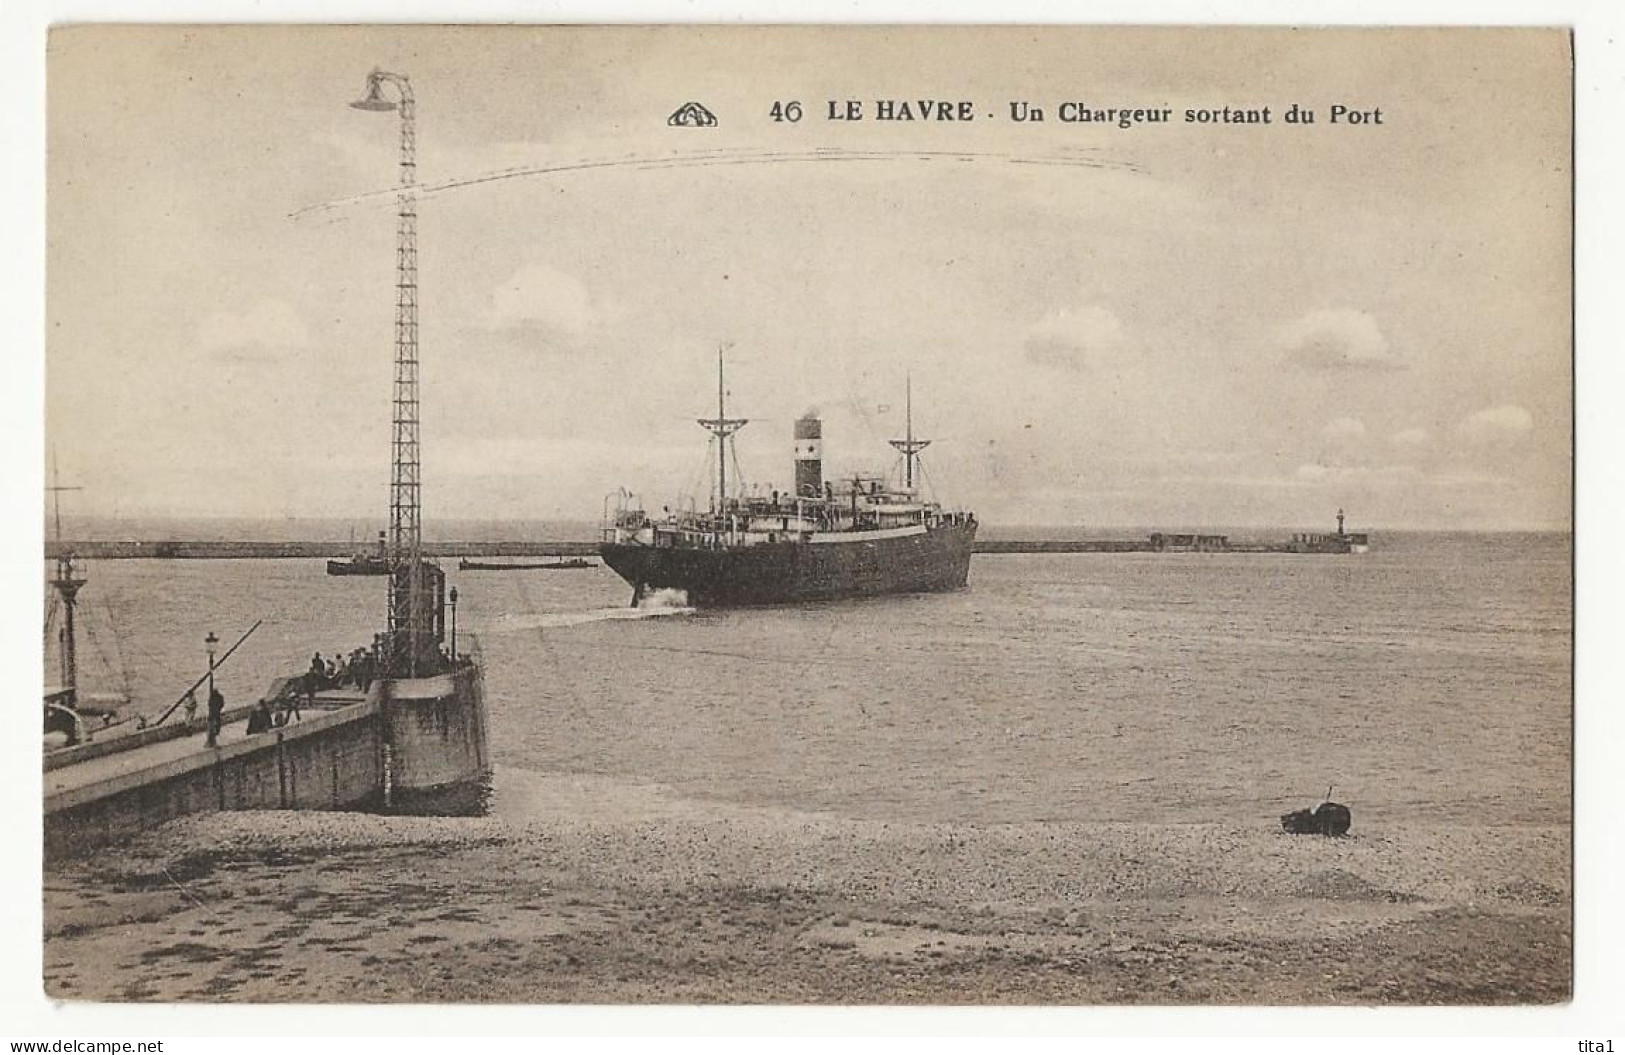 222 - Le Havre (Nr 46) - Un Chargeur Sortant Du Port - Harbour